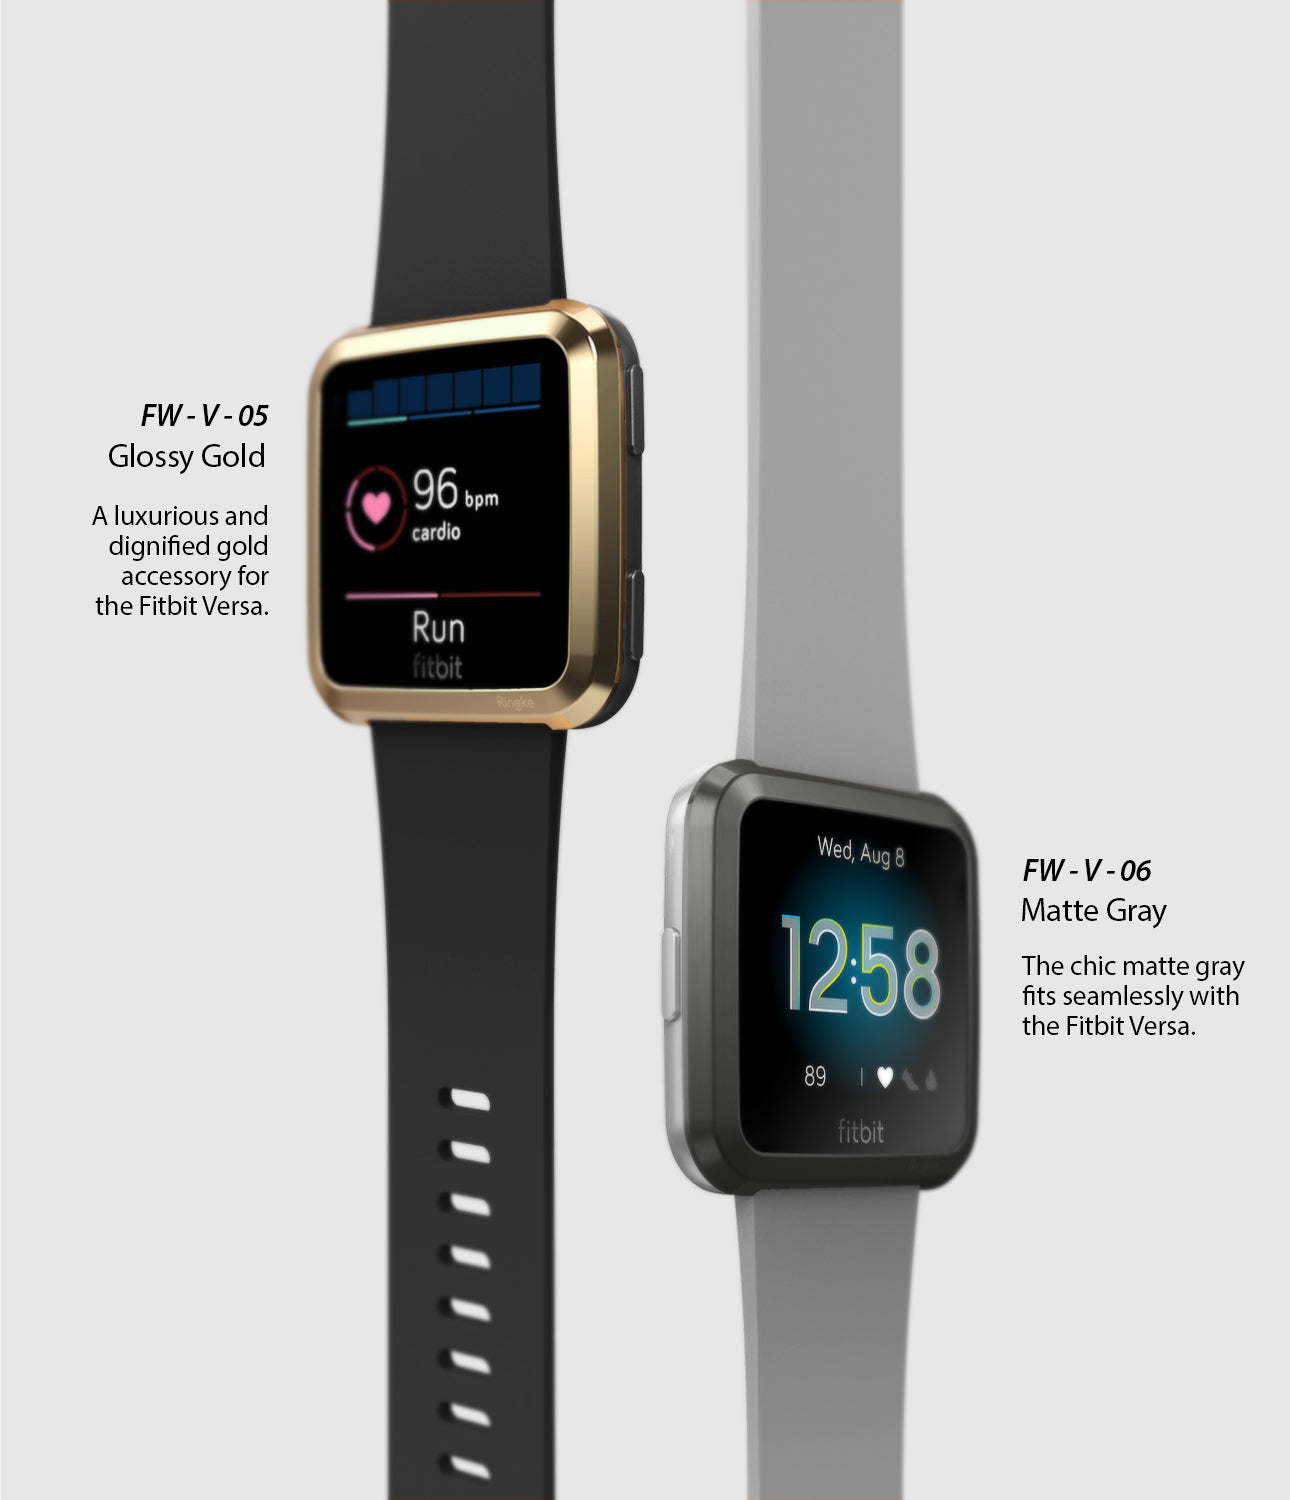 Ringke Bezel Styling Designed for Fitbit Versa Case Cover, Gray - FW-V-06, gold